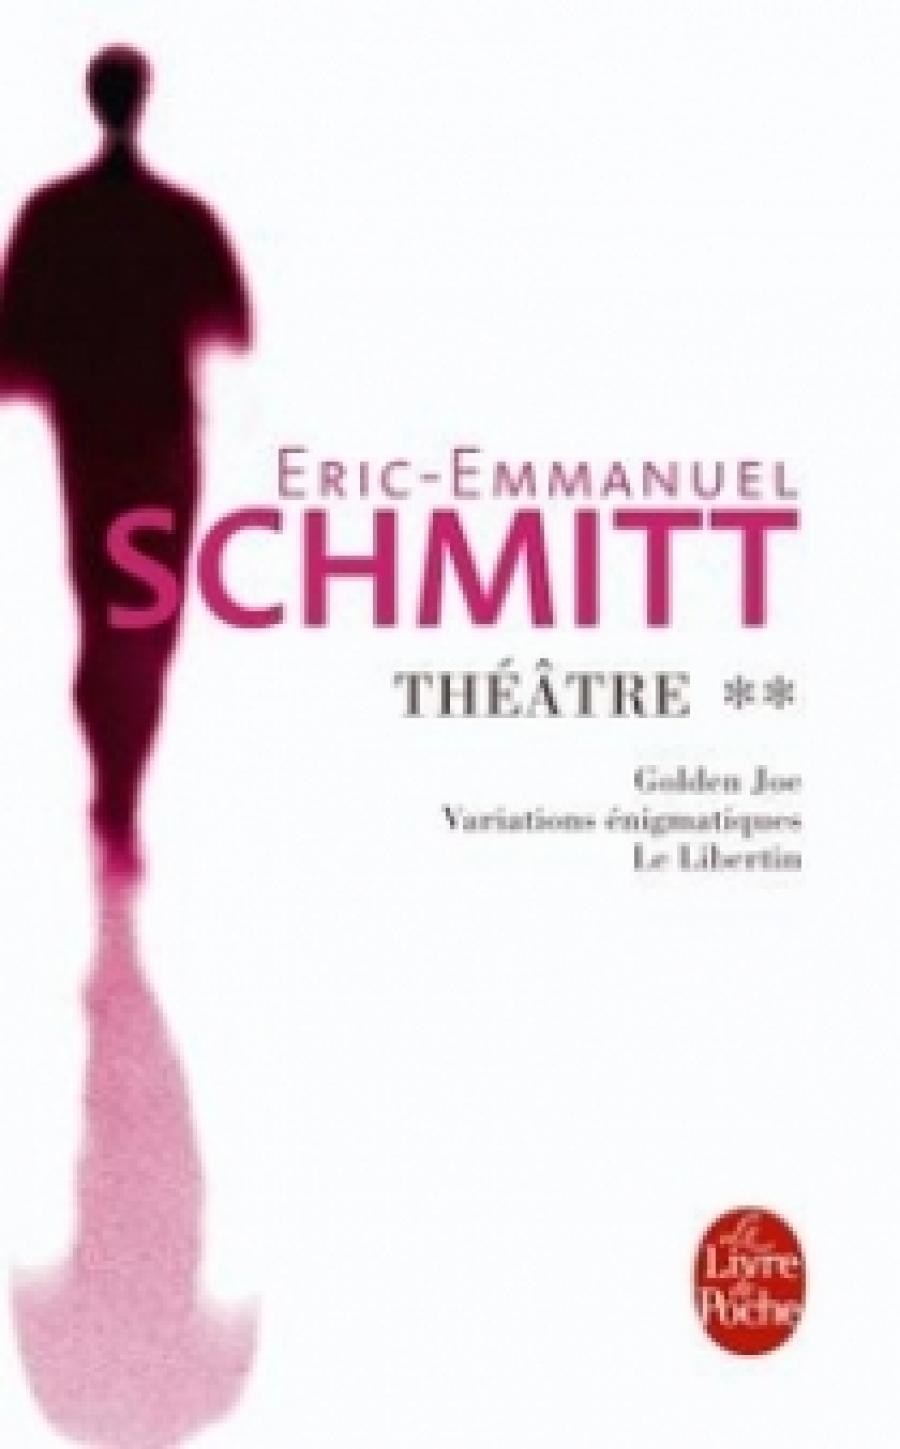 Eric-Emmanuel S. Theatre 2 (Golden Joe, Variations enigmatiques, Le Libertin) 